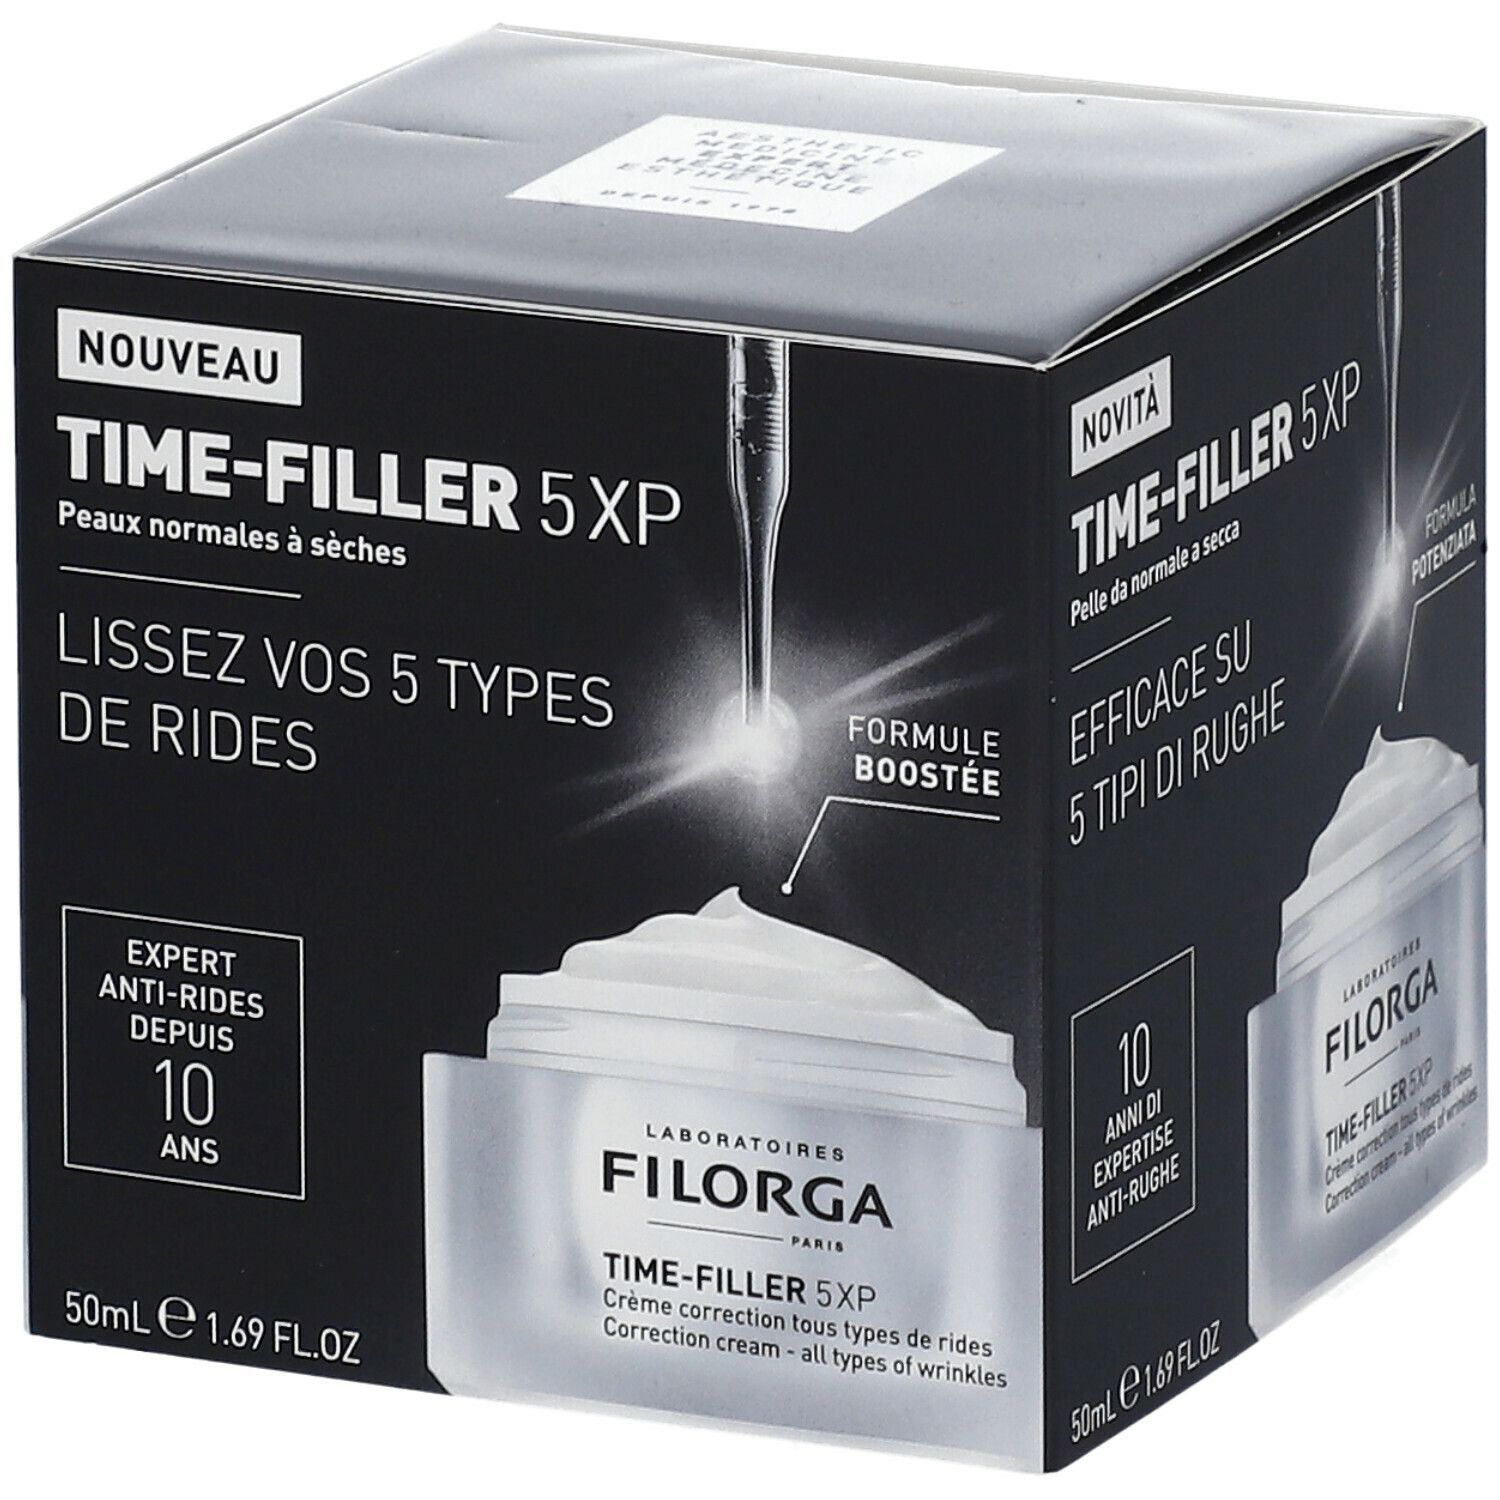 Filorga TIme-Filler 5XP